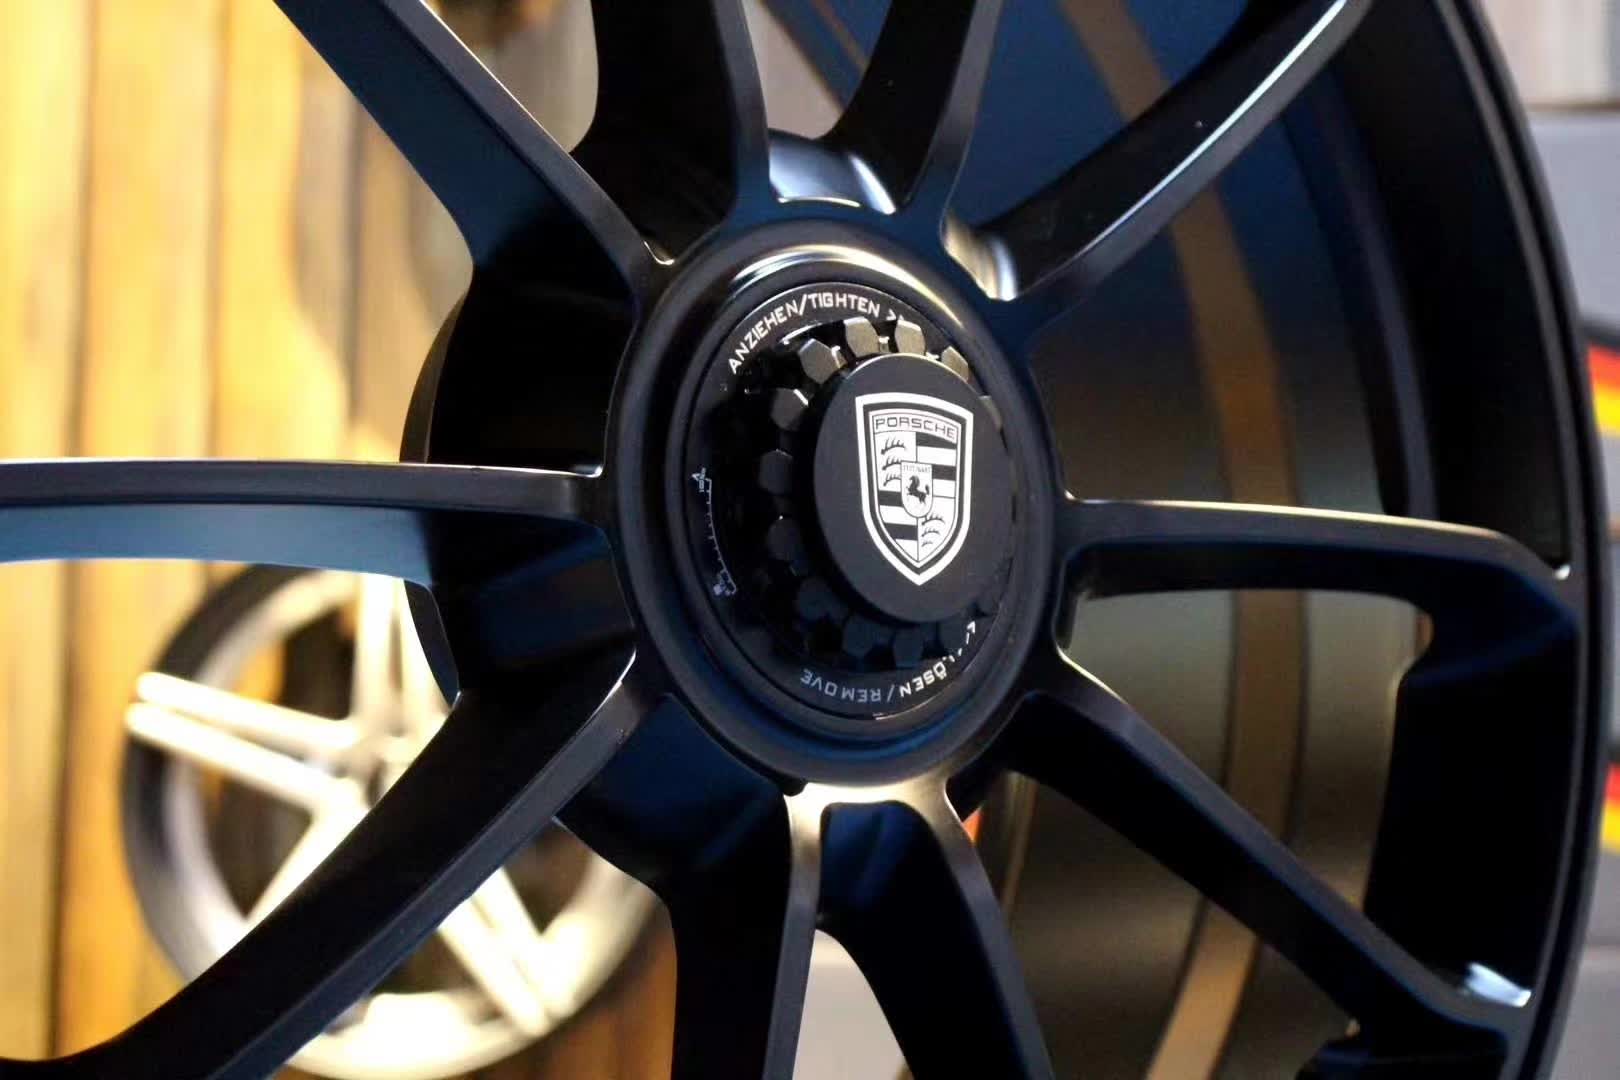 Porsche 718 Center lock 21 inch wheels 